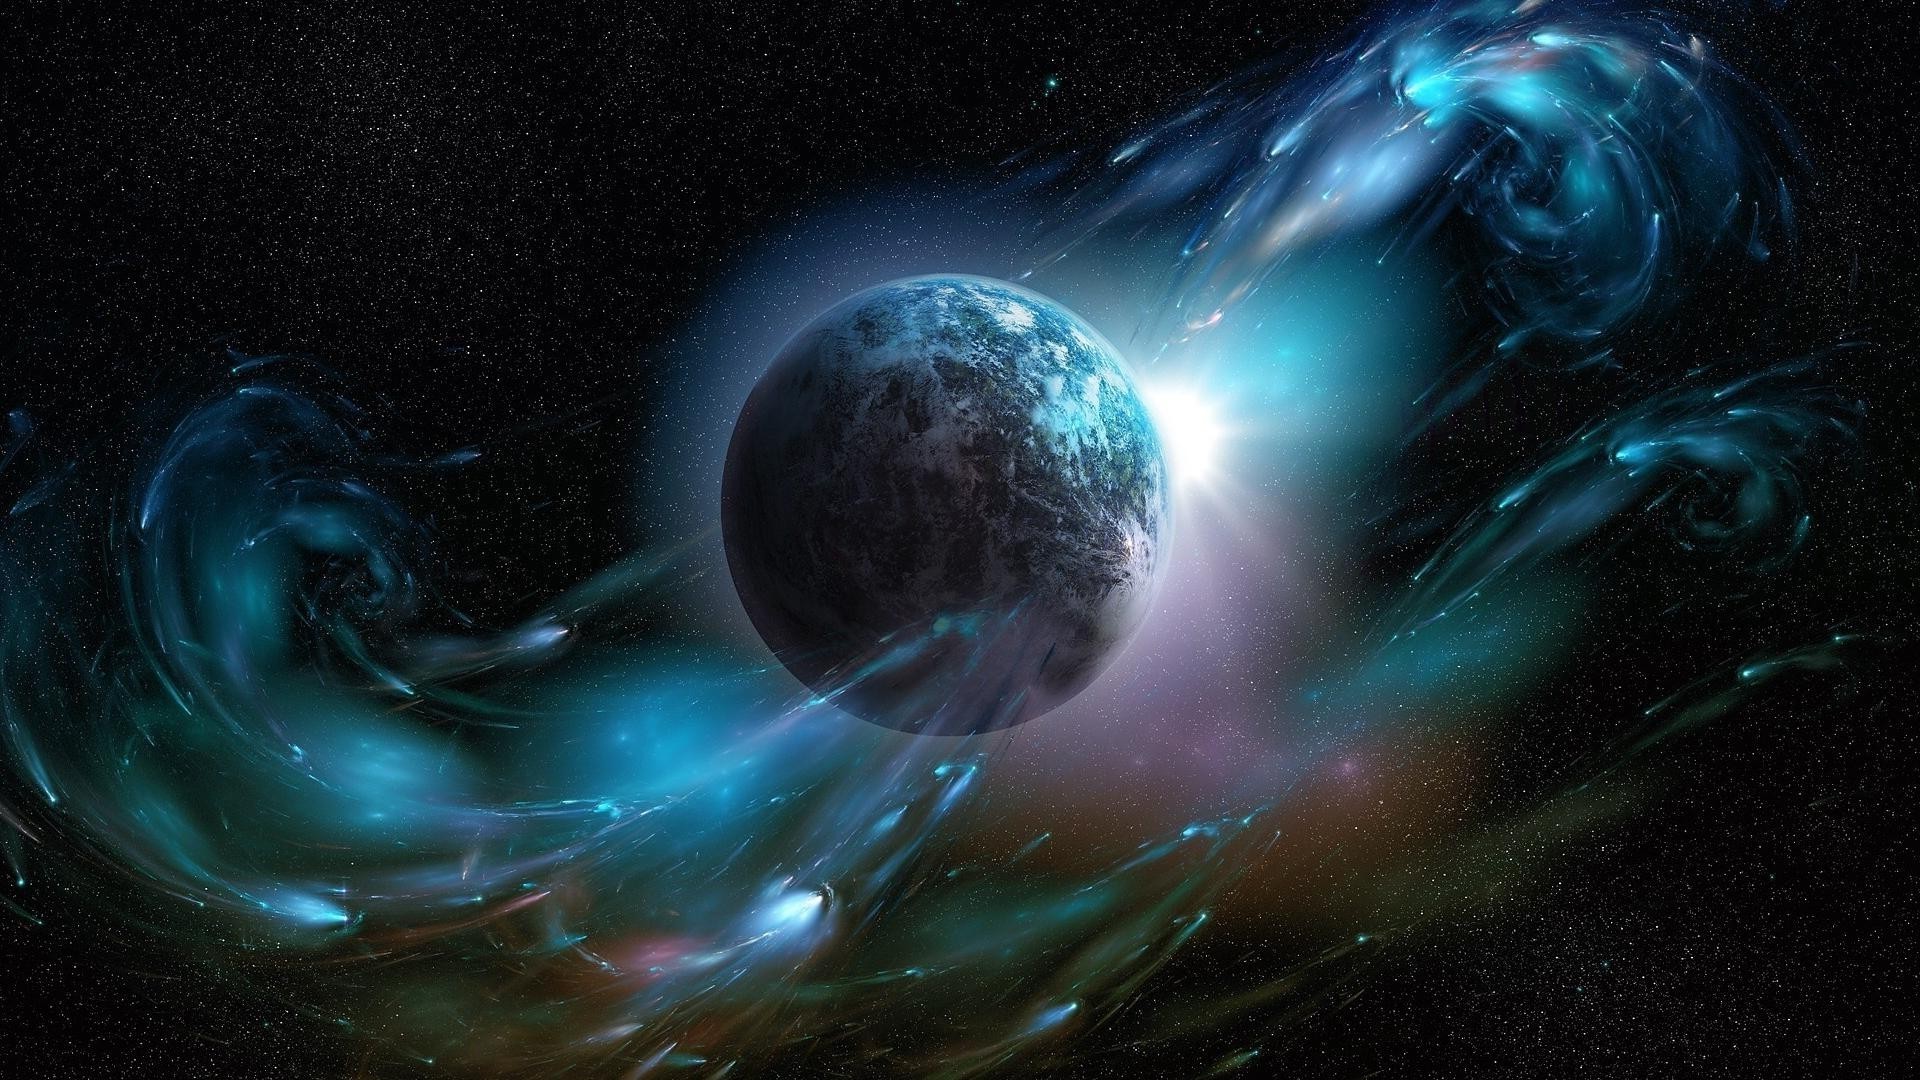 галактики астрономия сюрреалистично фантазия пространство аннотация луна космос туманность планеты свет шарообразные наука энергии искусство фантастика будущее график фантастический кольцо